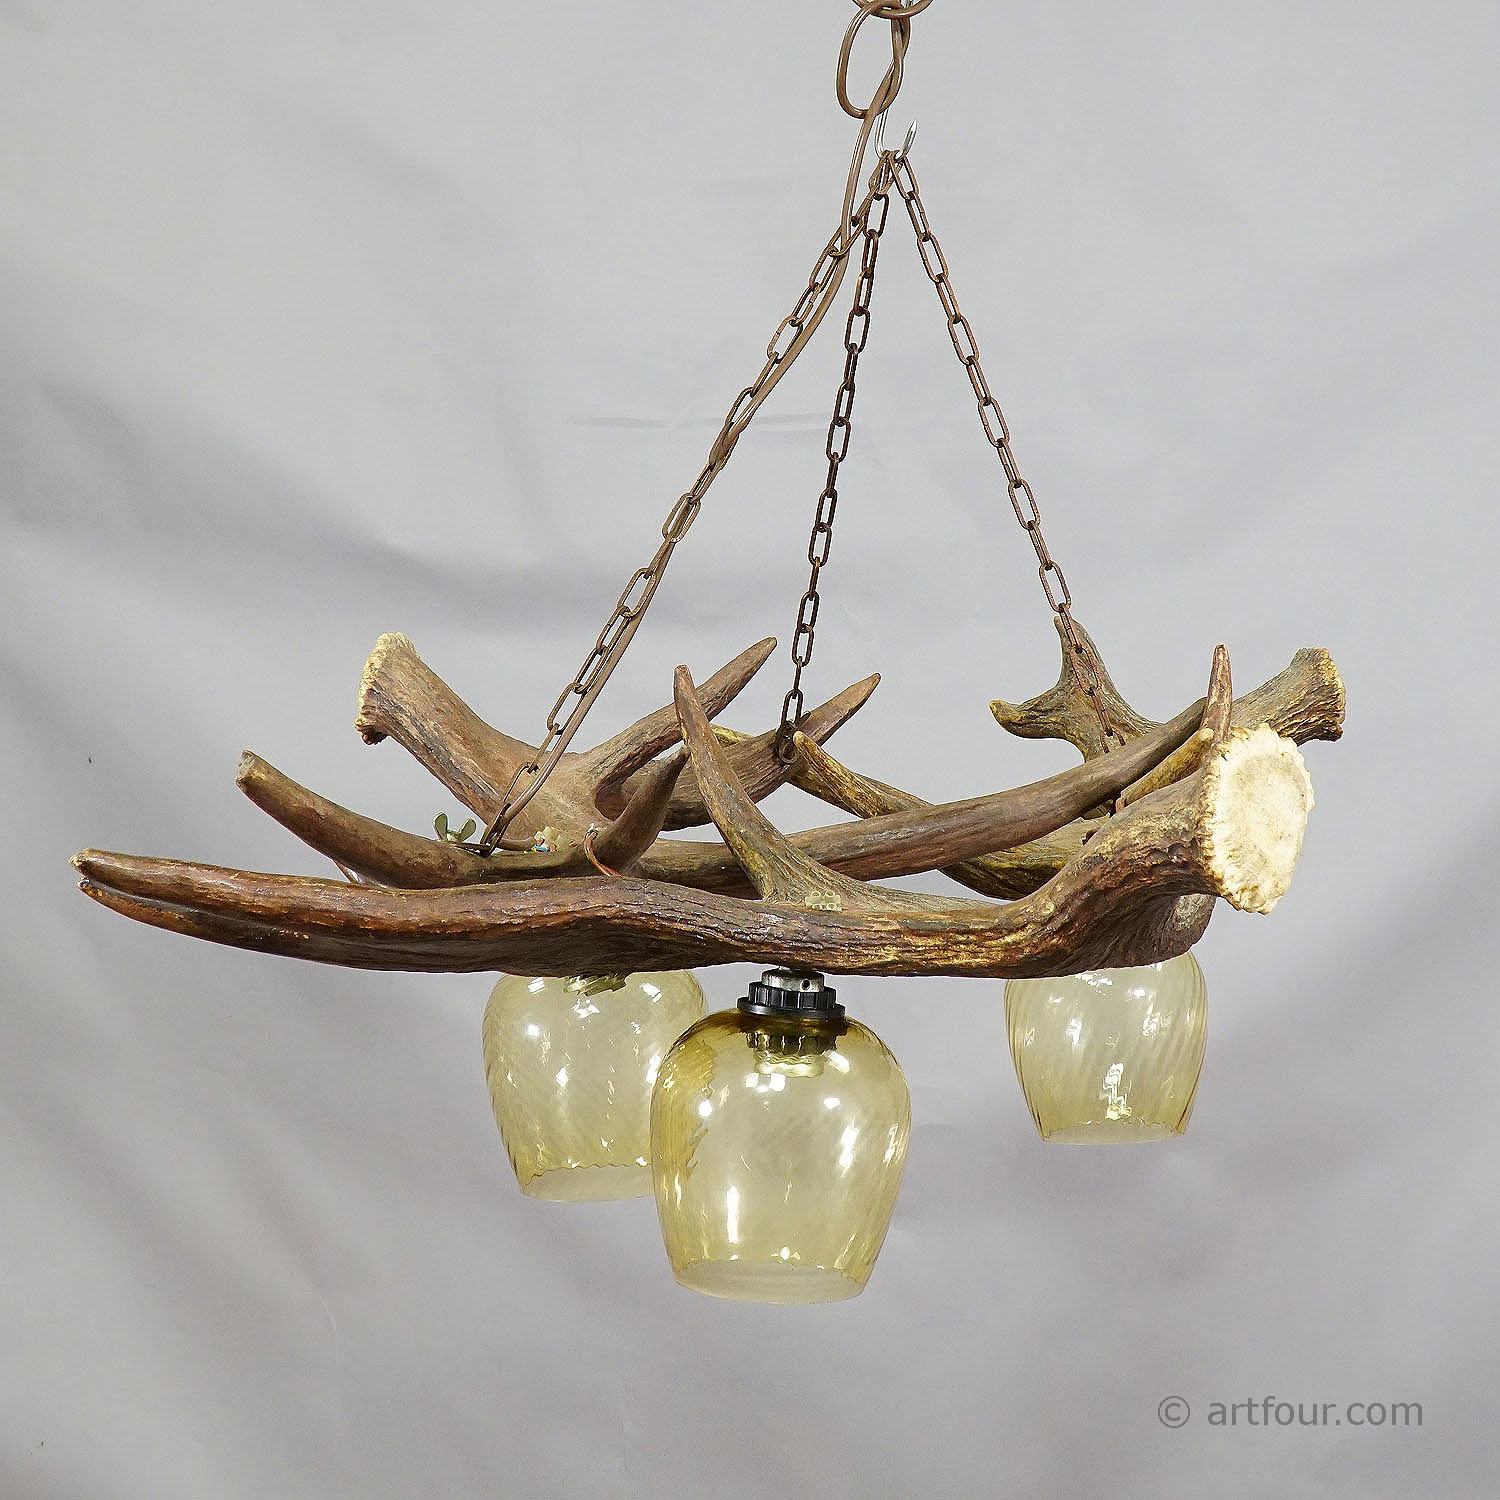 Rustic Antler Lamp with Elk Antlers